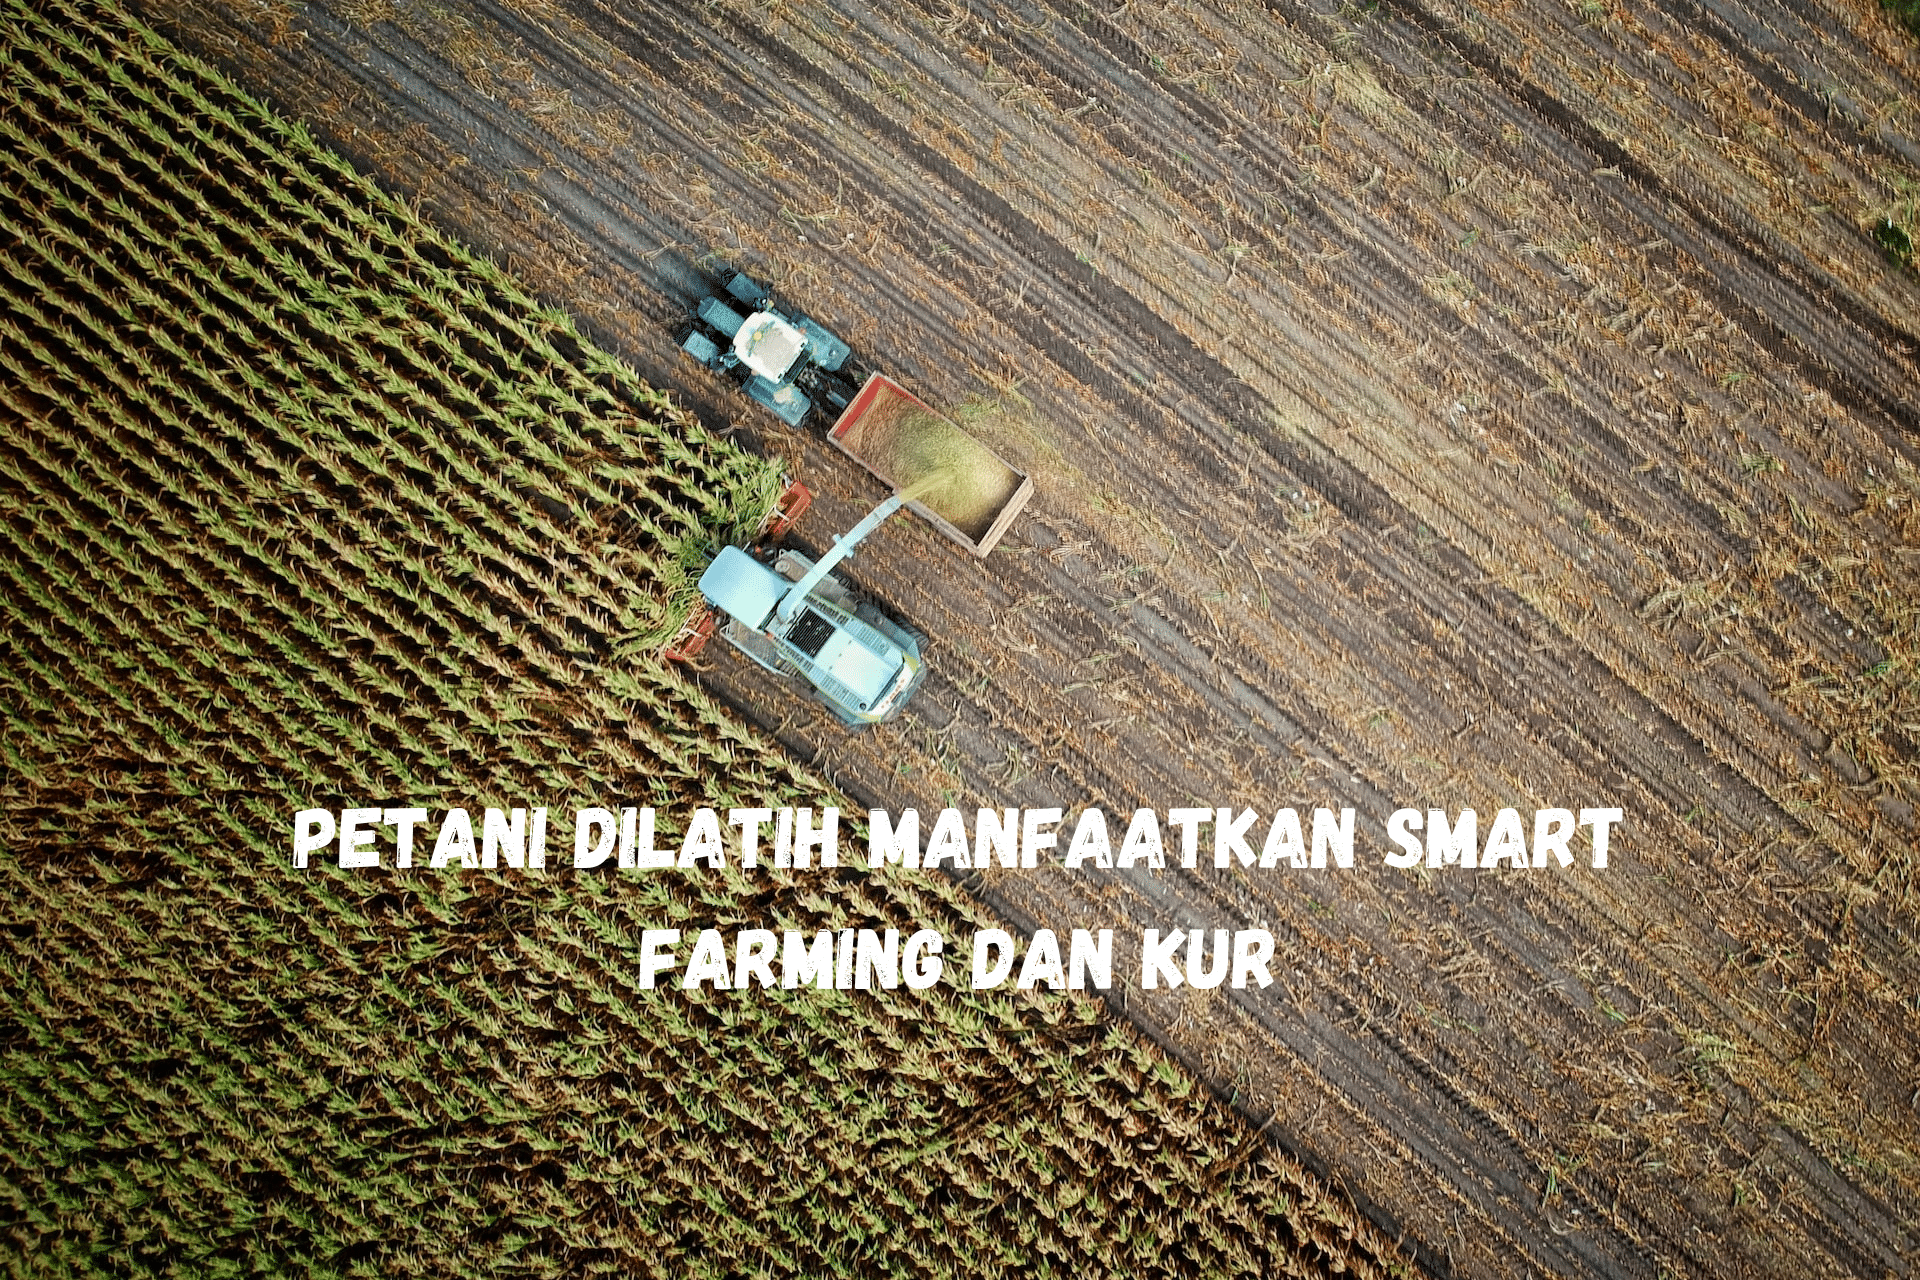 Petani Dilatih Manfaatkan Smart Farming dan KUR